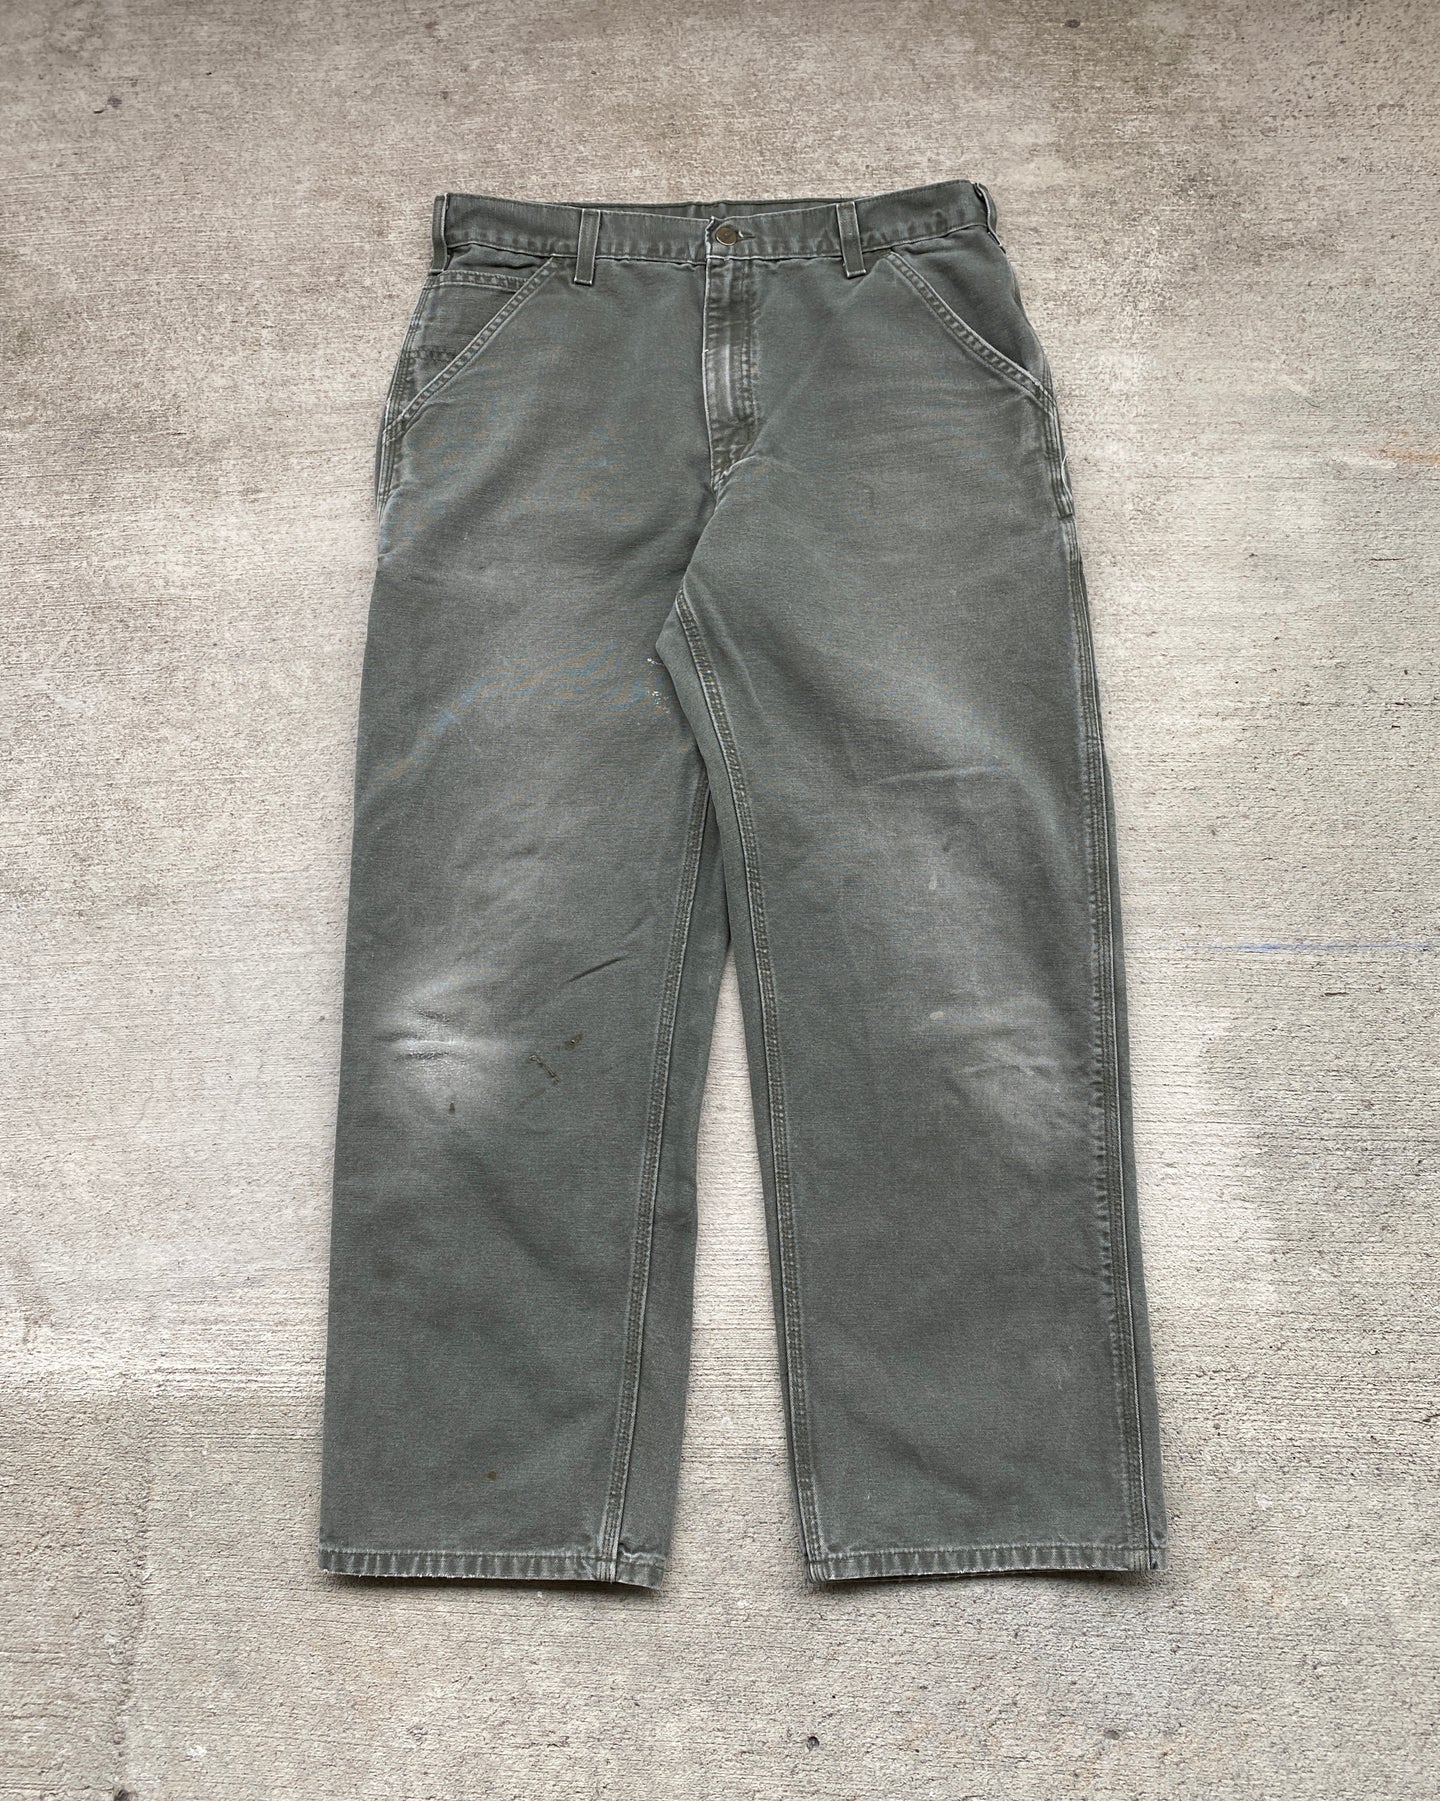 1990s Carhartt Moss Green Carpenter Pants - Size 34 x 31